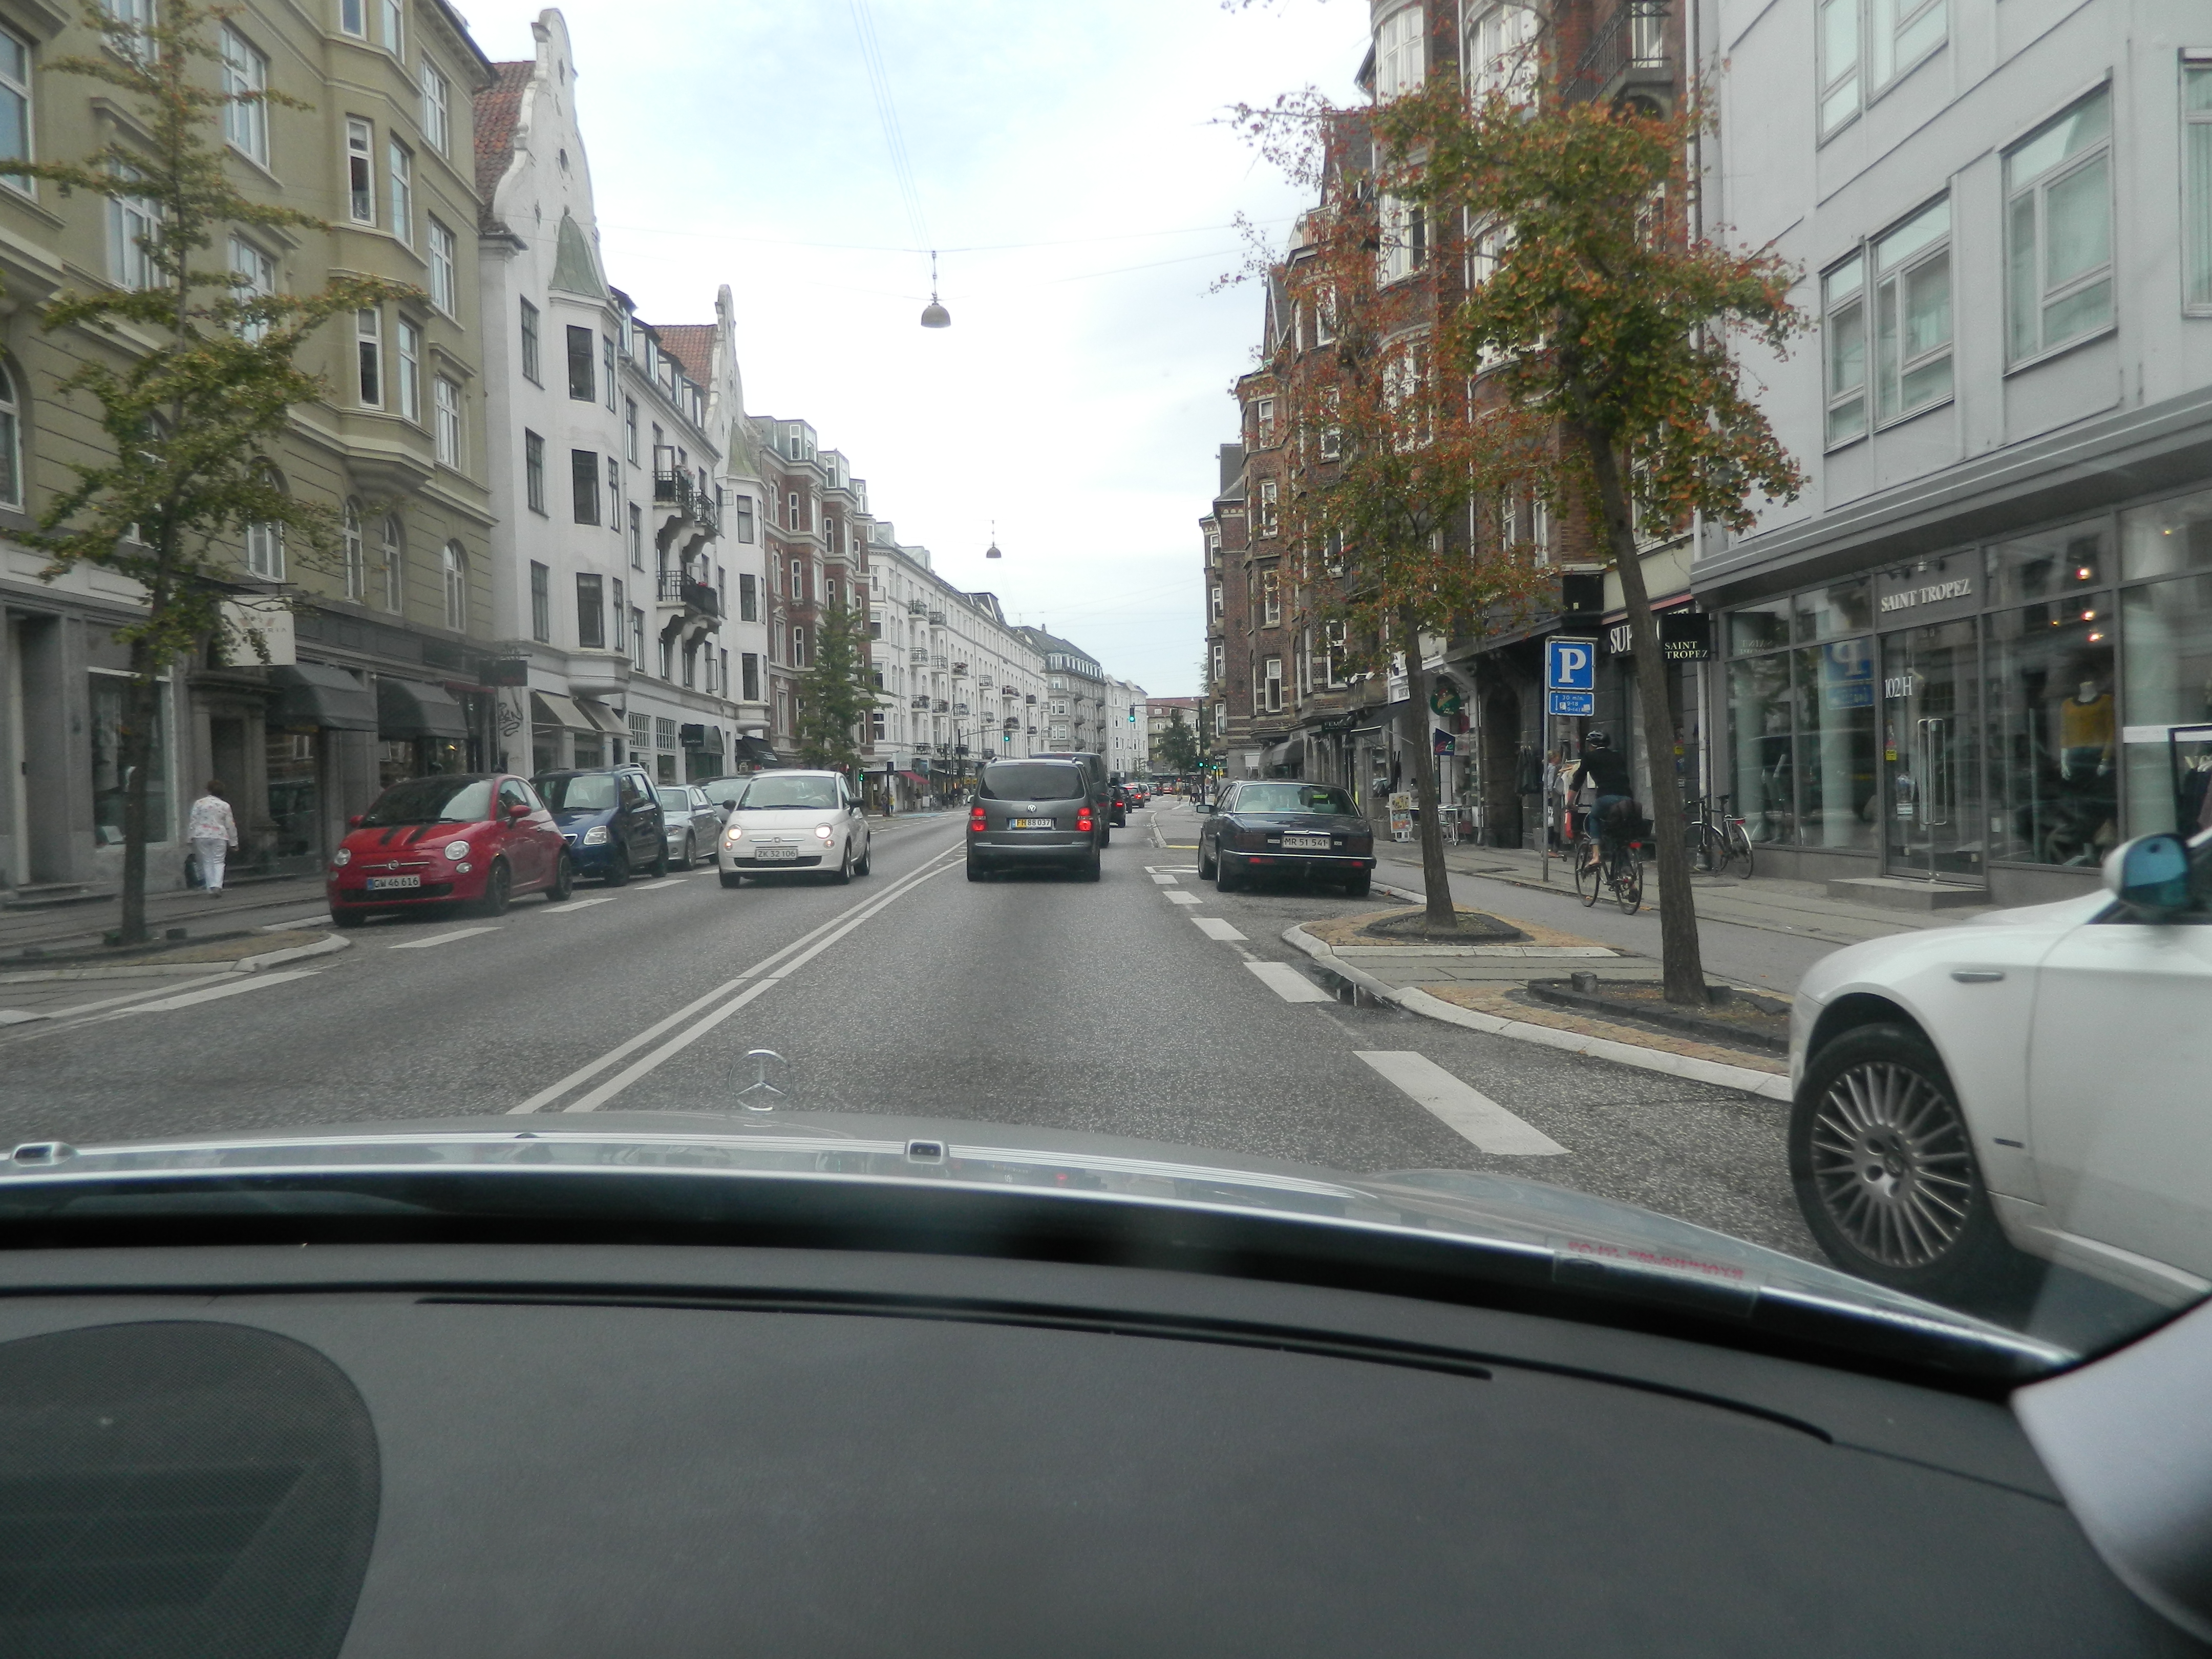 Local Round-Up: Ein paar Überraschungen unter den reichsten und ärmsten Vierteln in Kopenhagen